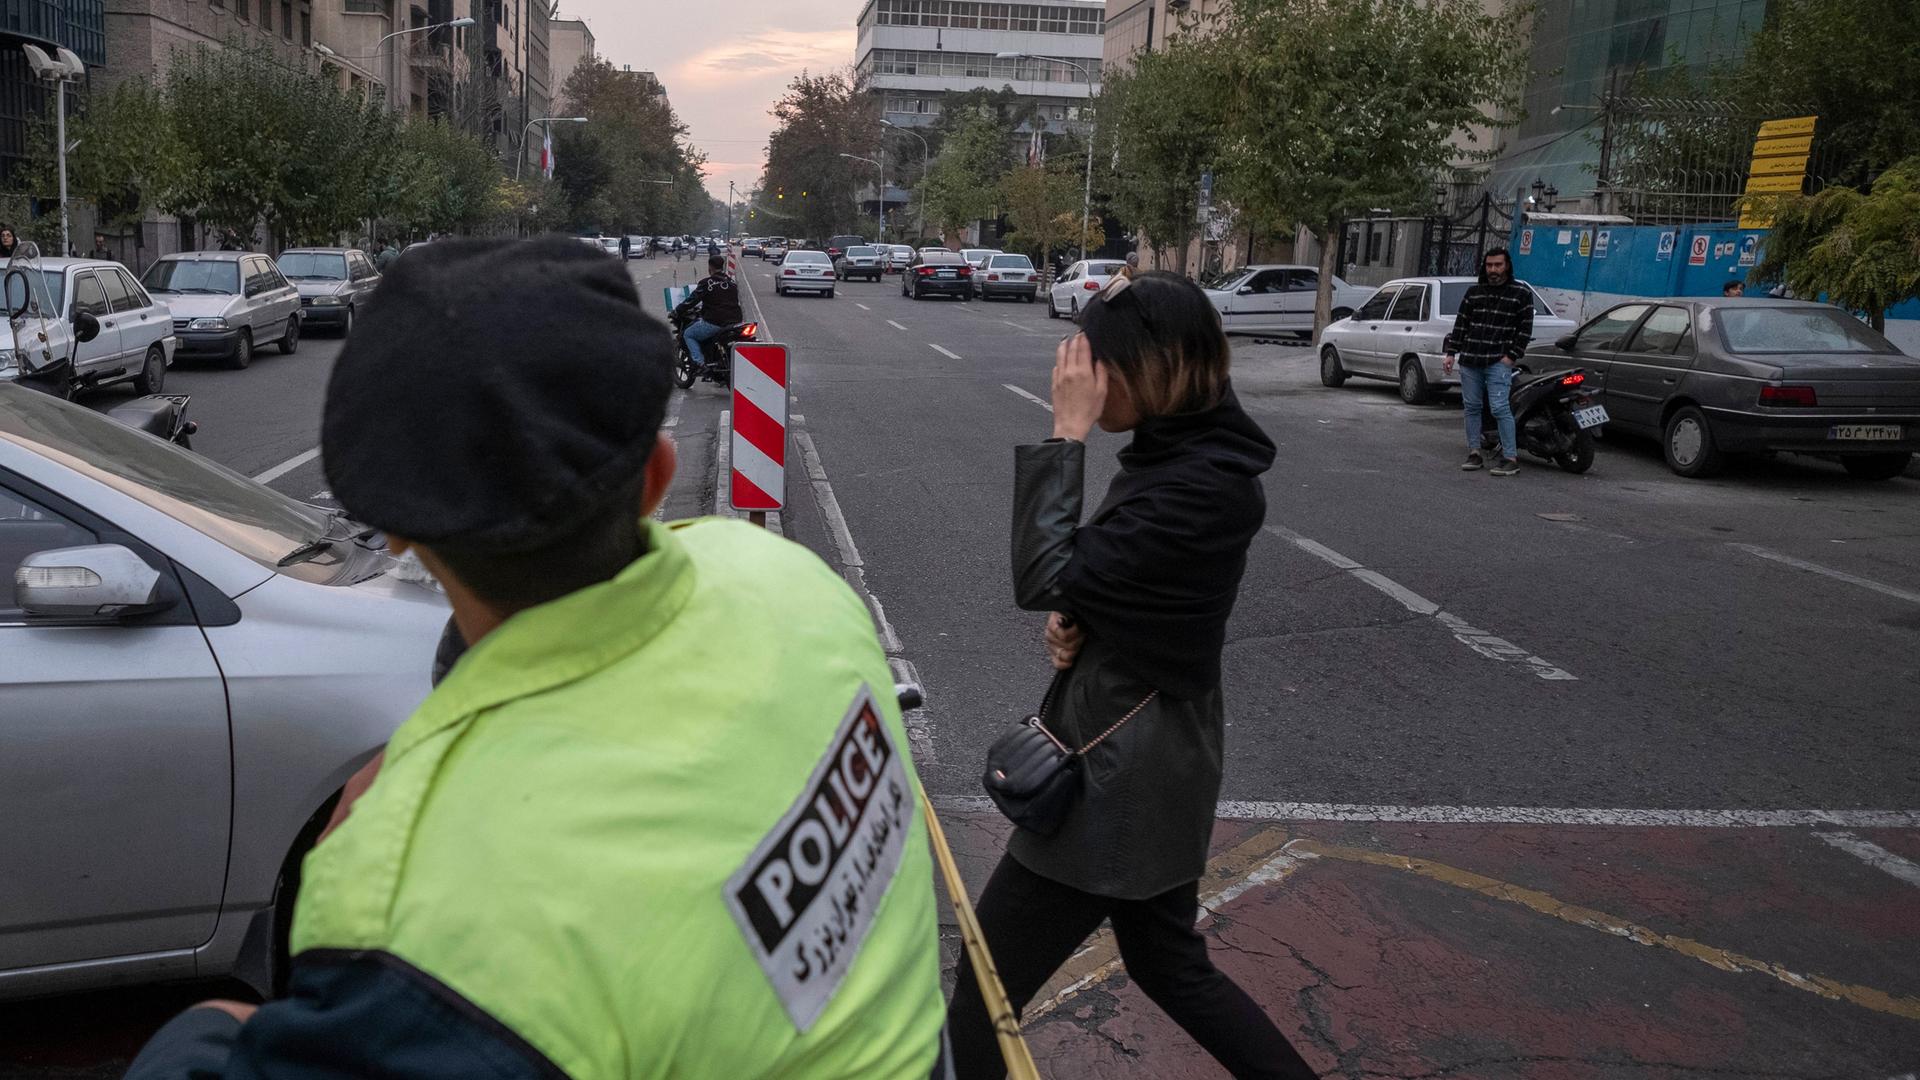 Eine junge Frau überquert in Teheran vor einem Polizisten ohne den verpflichtenden Schleier eine Straße. Sie versucht mit der Hand ihr Gesicht zu verbergen.